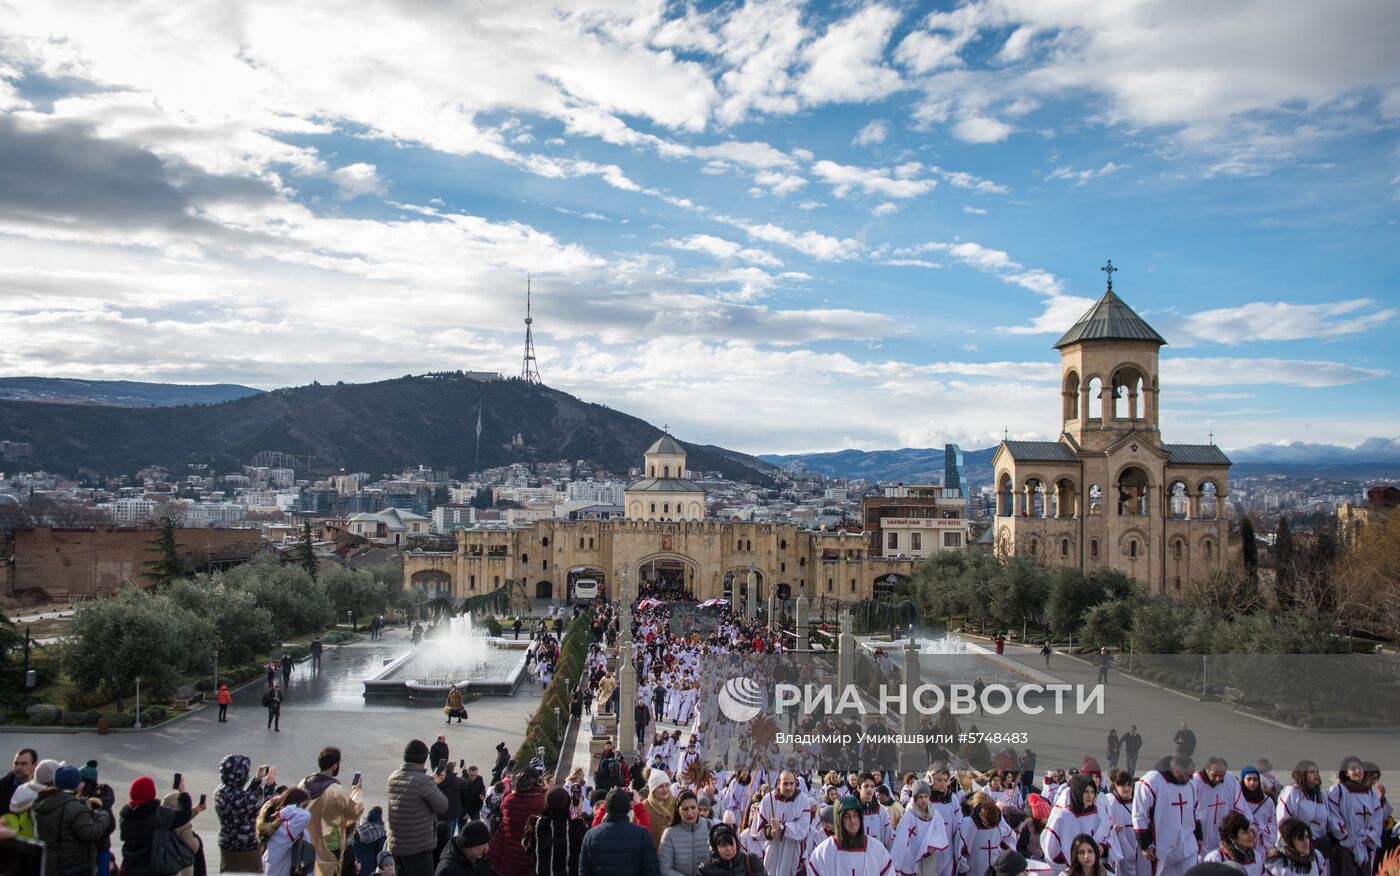 Рождественское благотворительное шествие "Алило" в Тбилиси